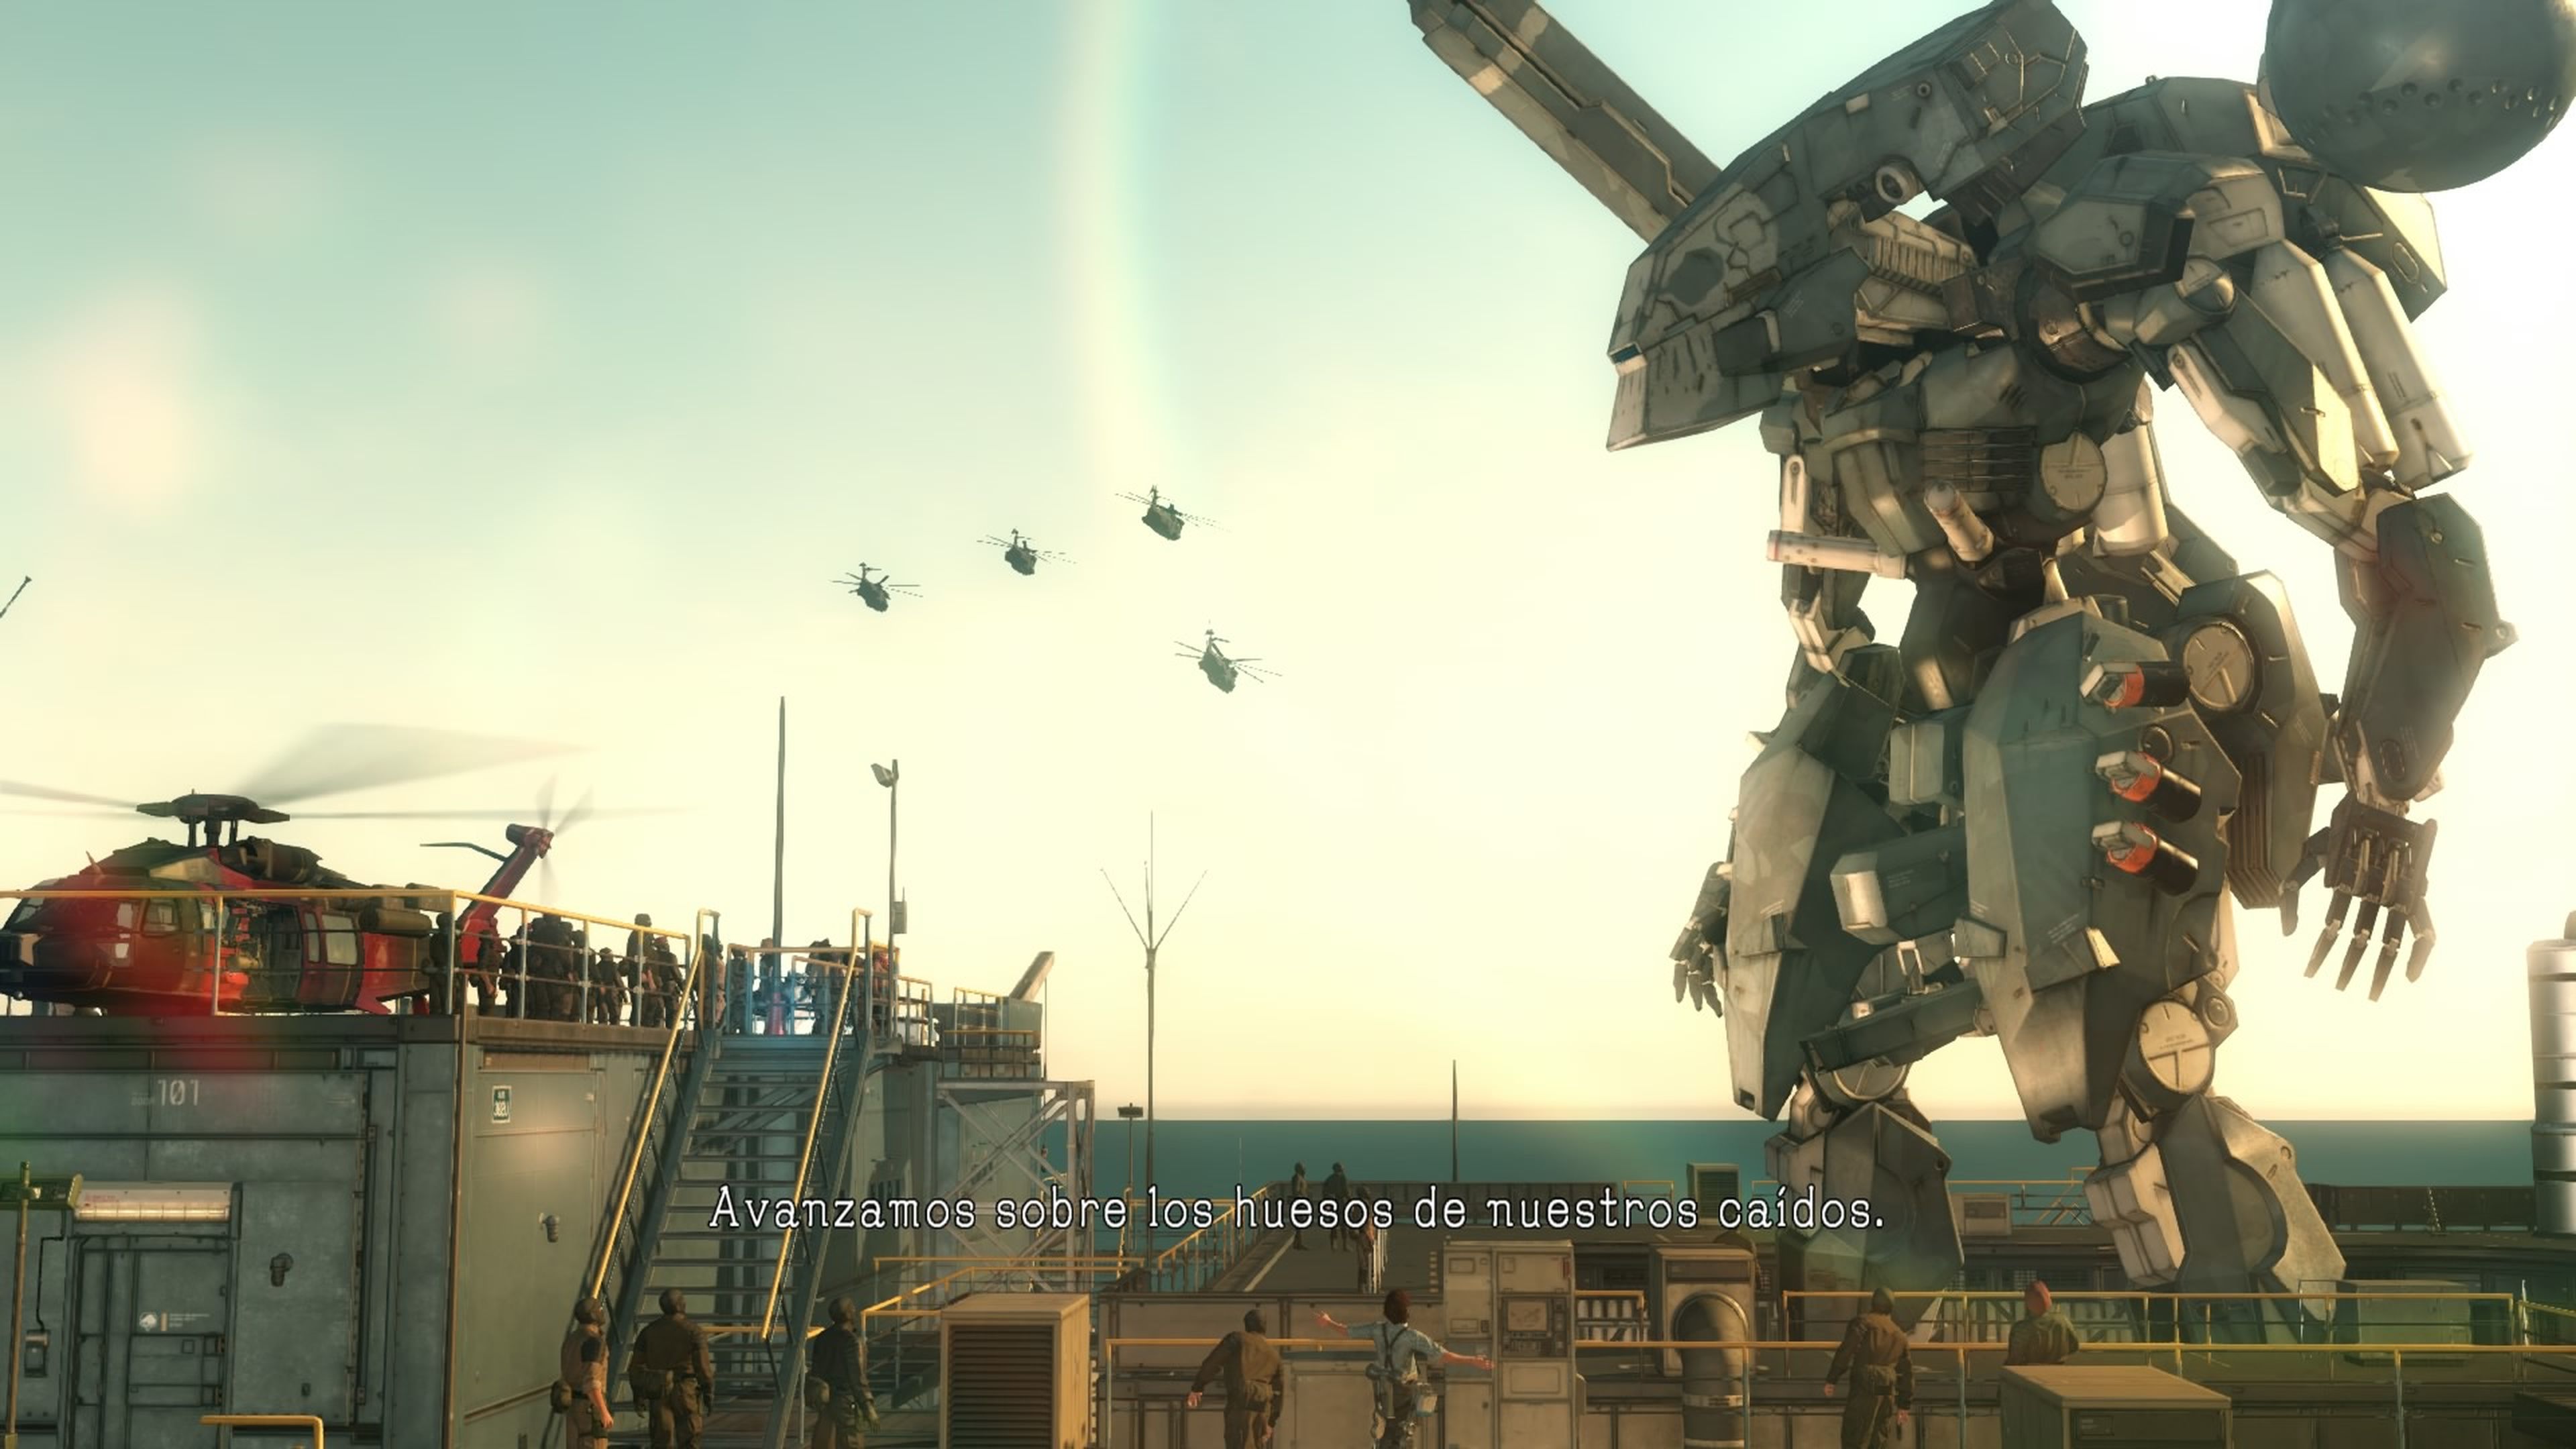 Los mejores momentos de Metal Gear Solid V The Phantom Pain